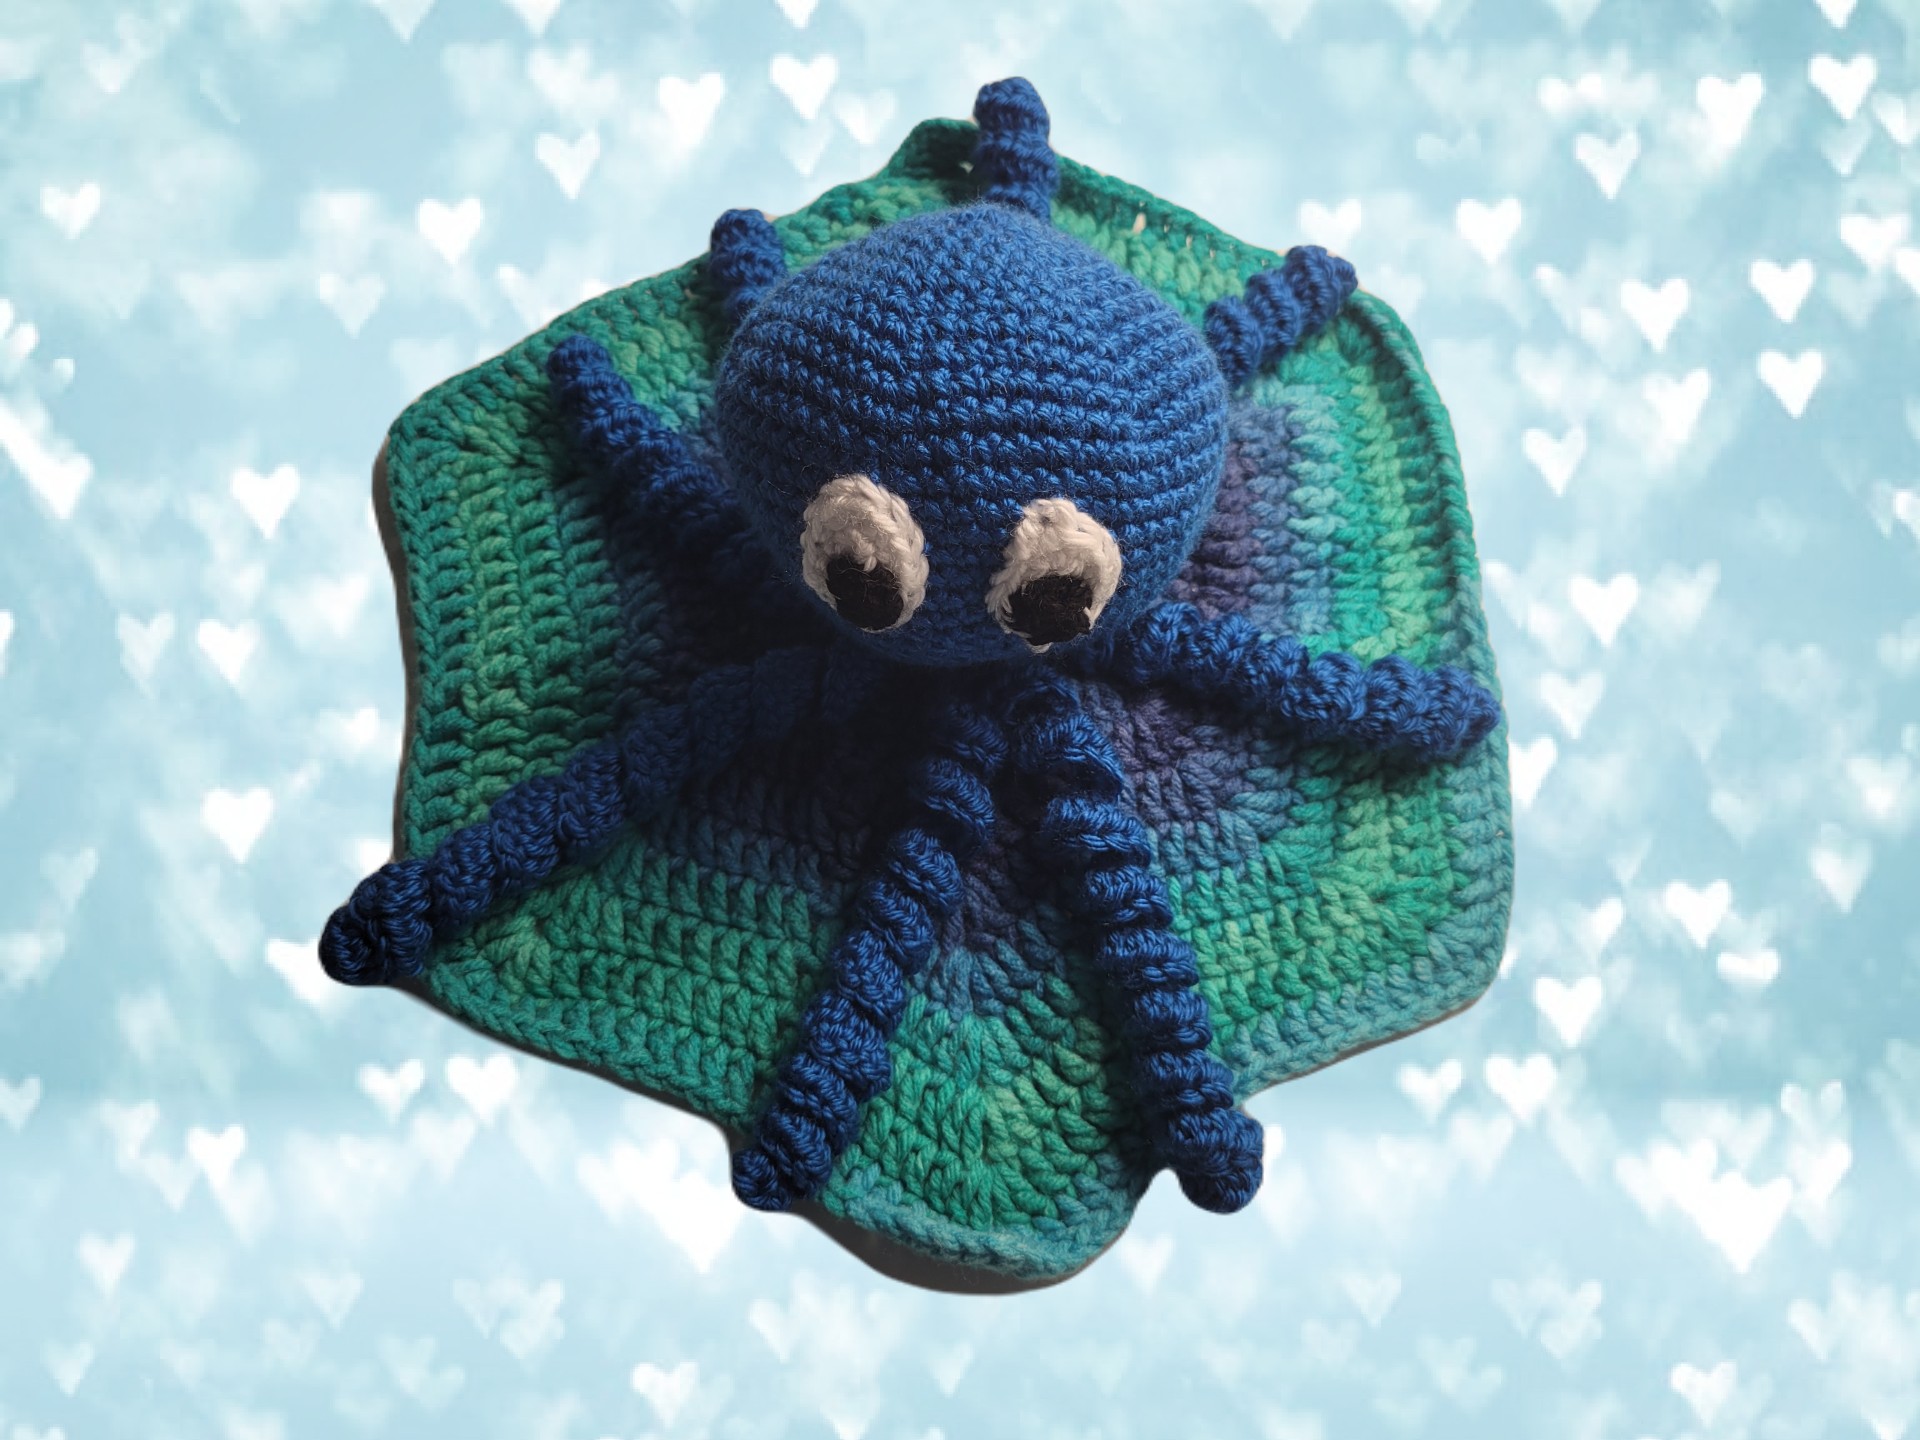 Free Crochet Pattern: Crochet Octopus Lovey or Ocean Lovey